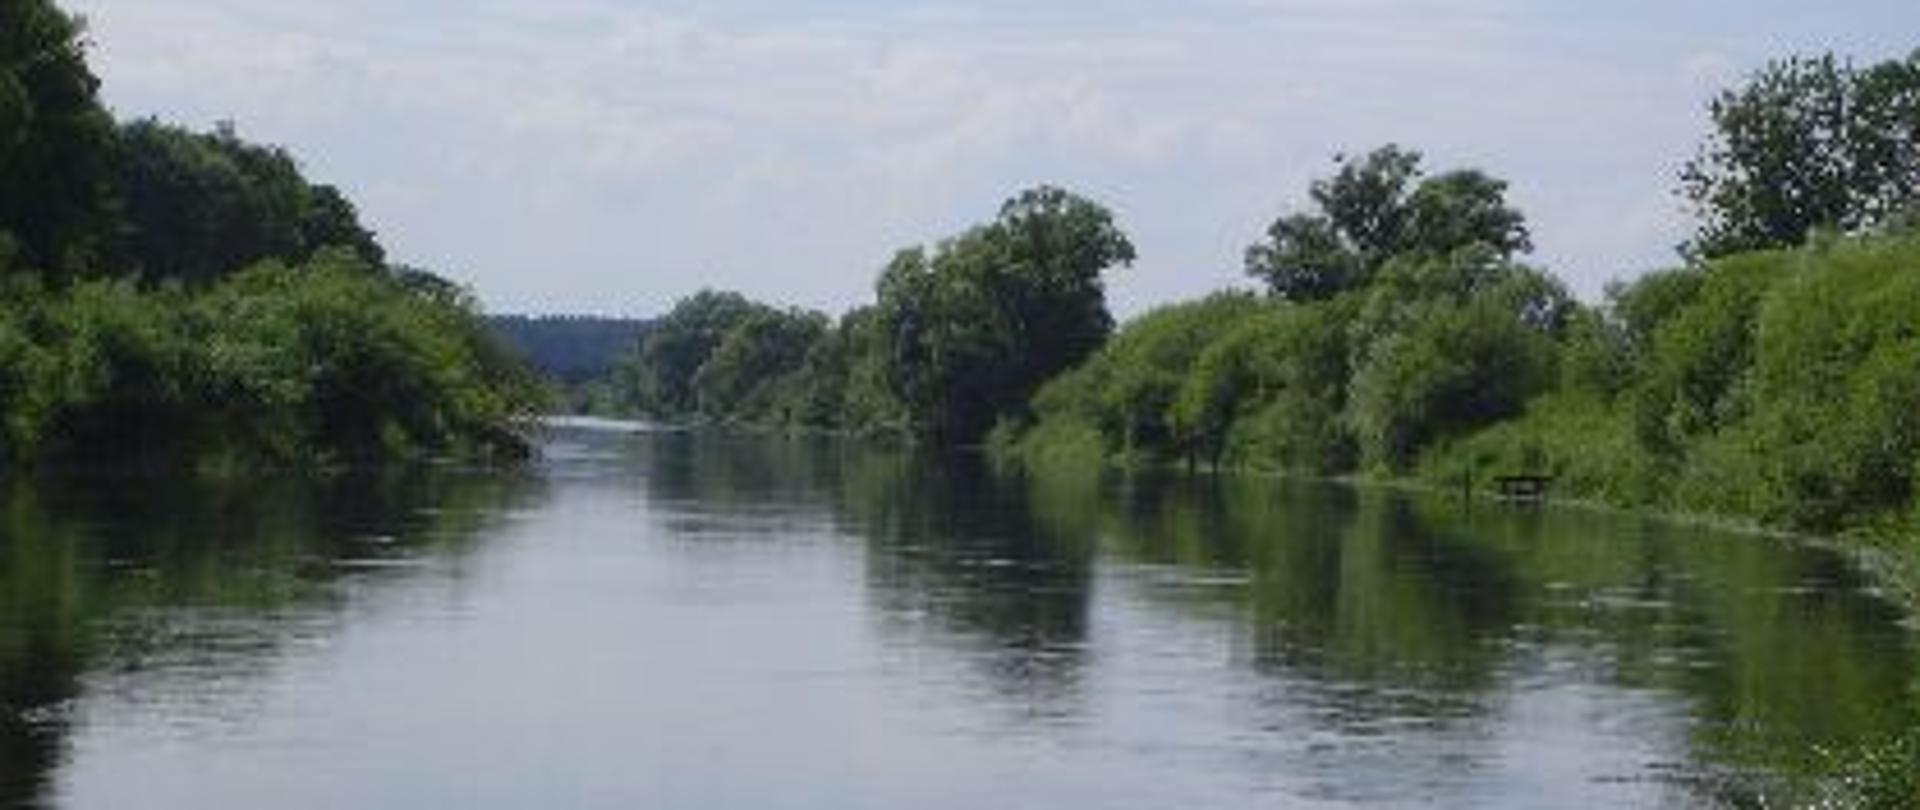 Rzeka Noteć w okolicach Krzyża Wielkopolskiego